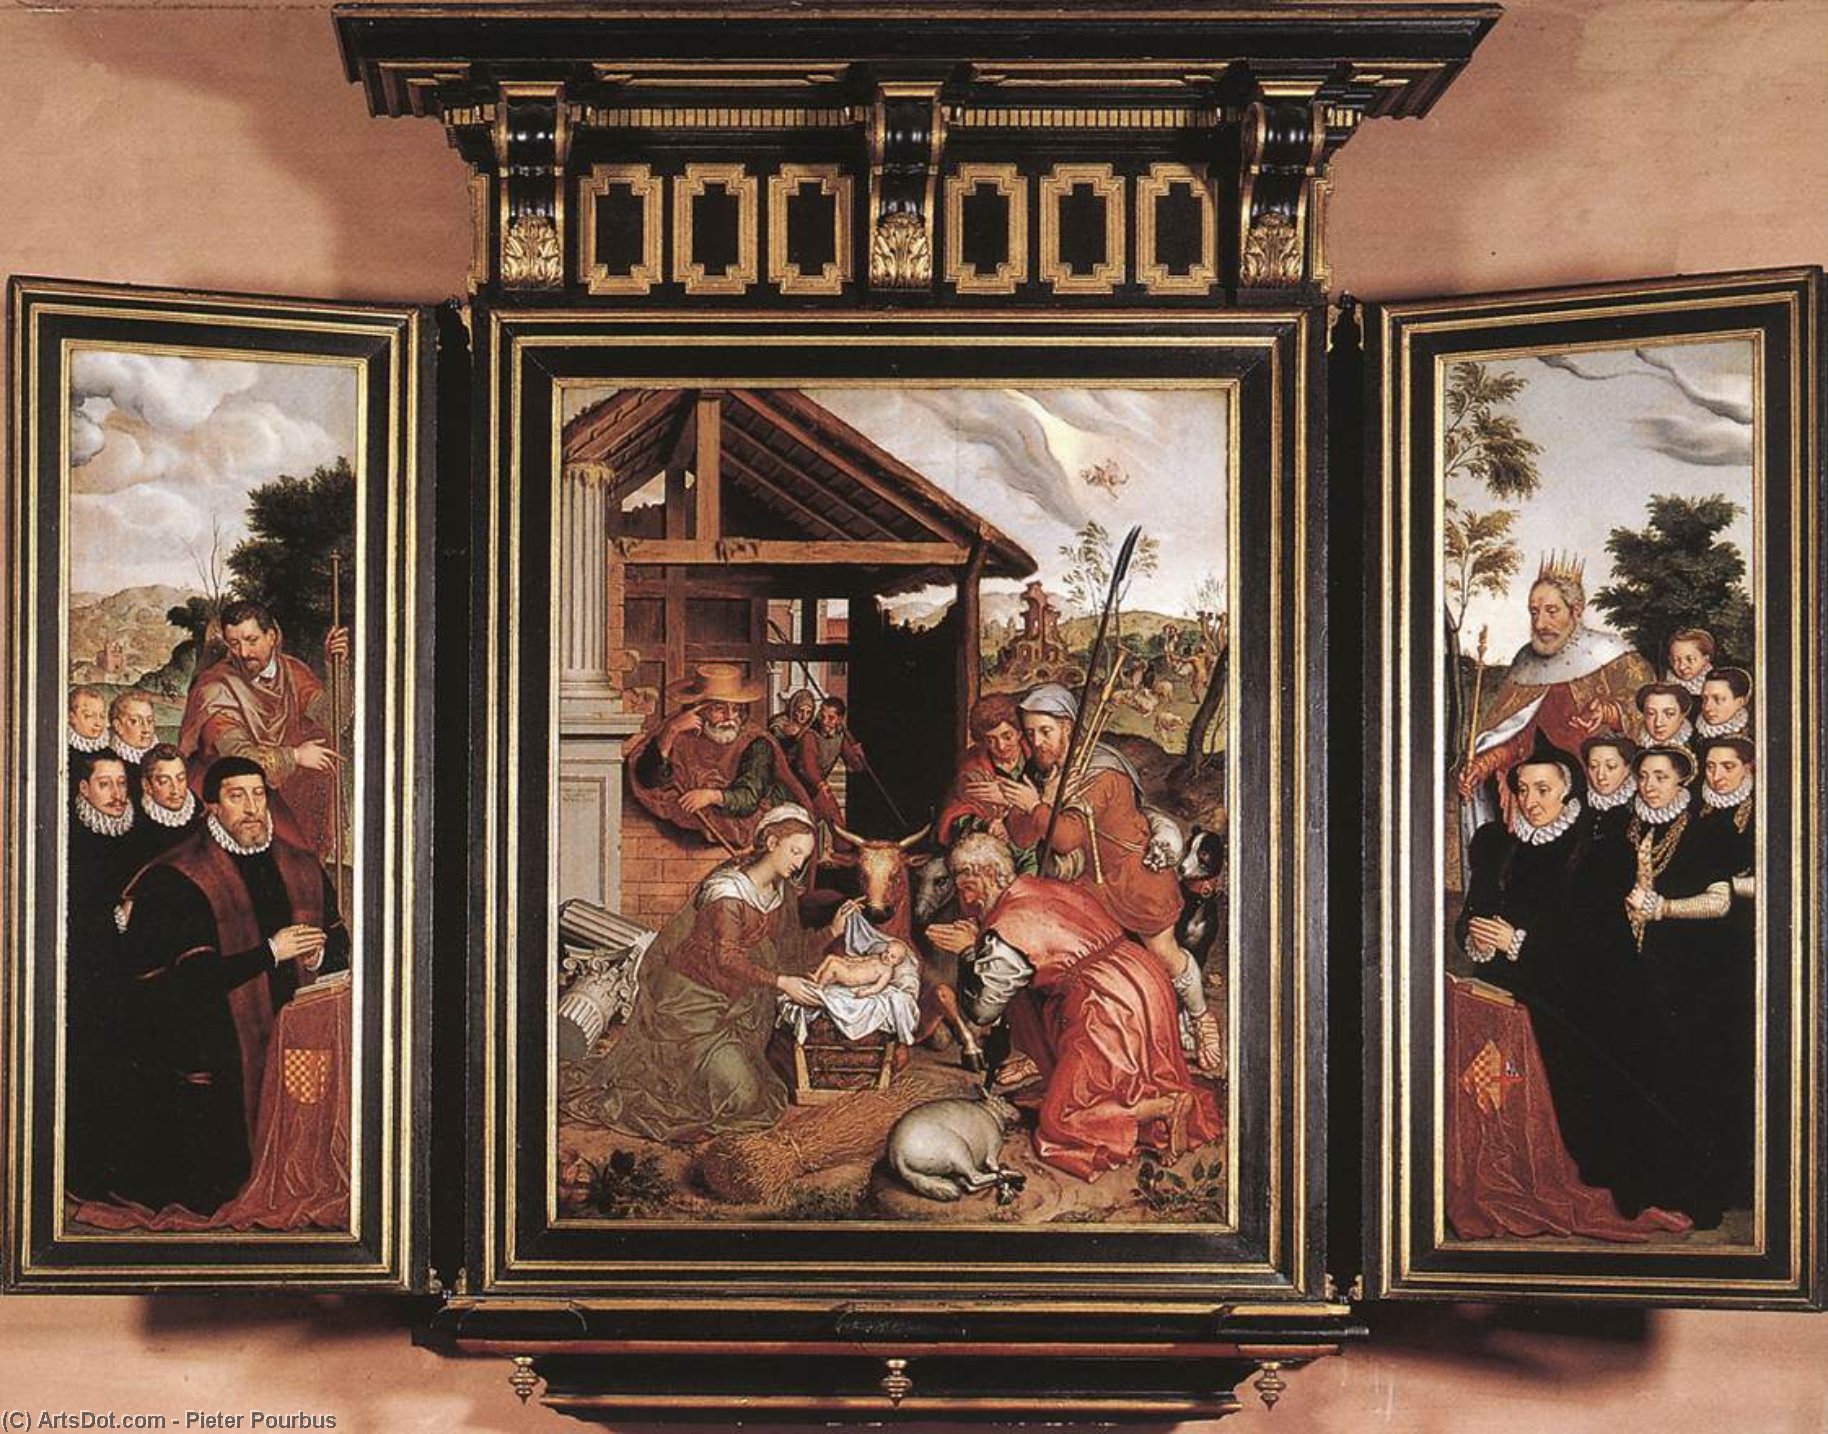 WikiOO.org - Encyclopedia of Fine Arts - Lukisan, Artwork Pieter Pourbus - Adoration of the Shepherds